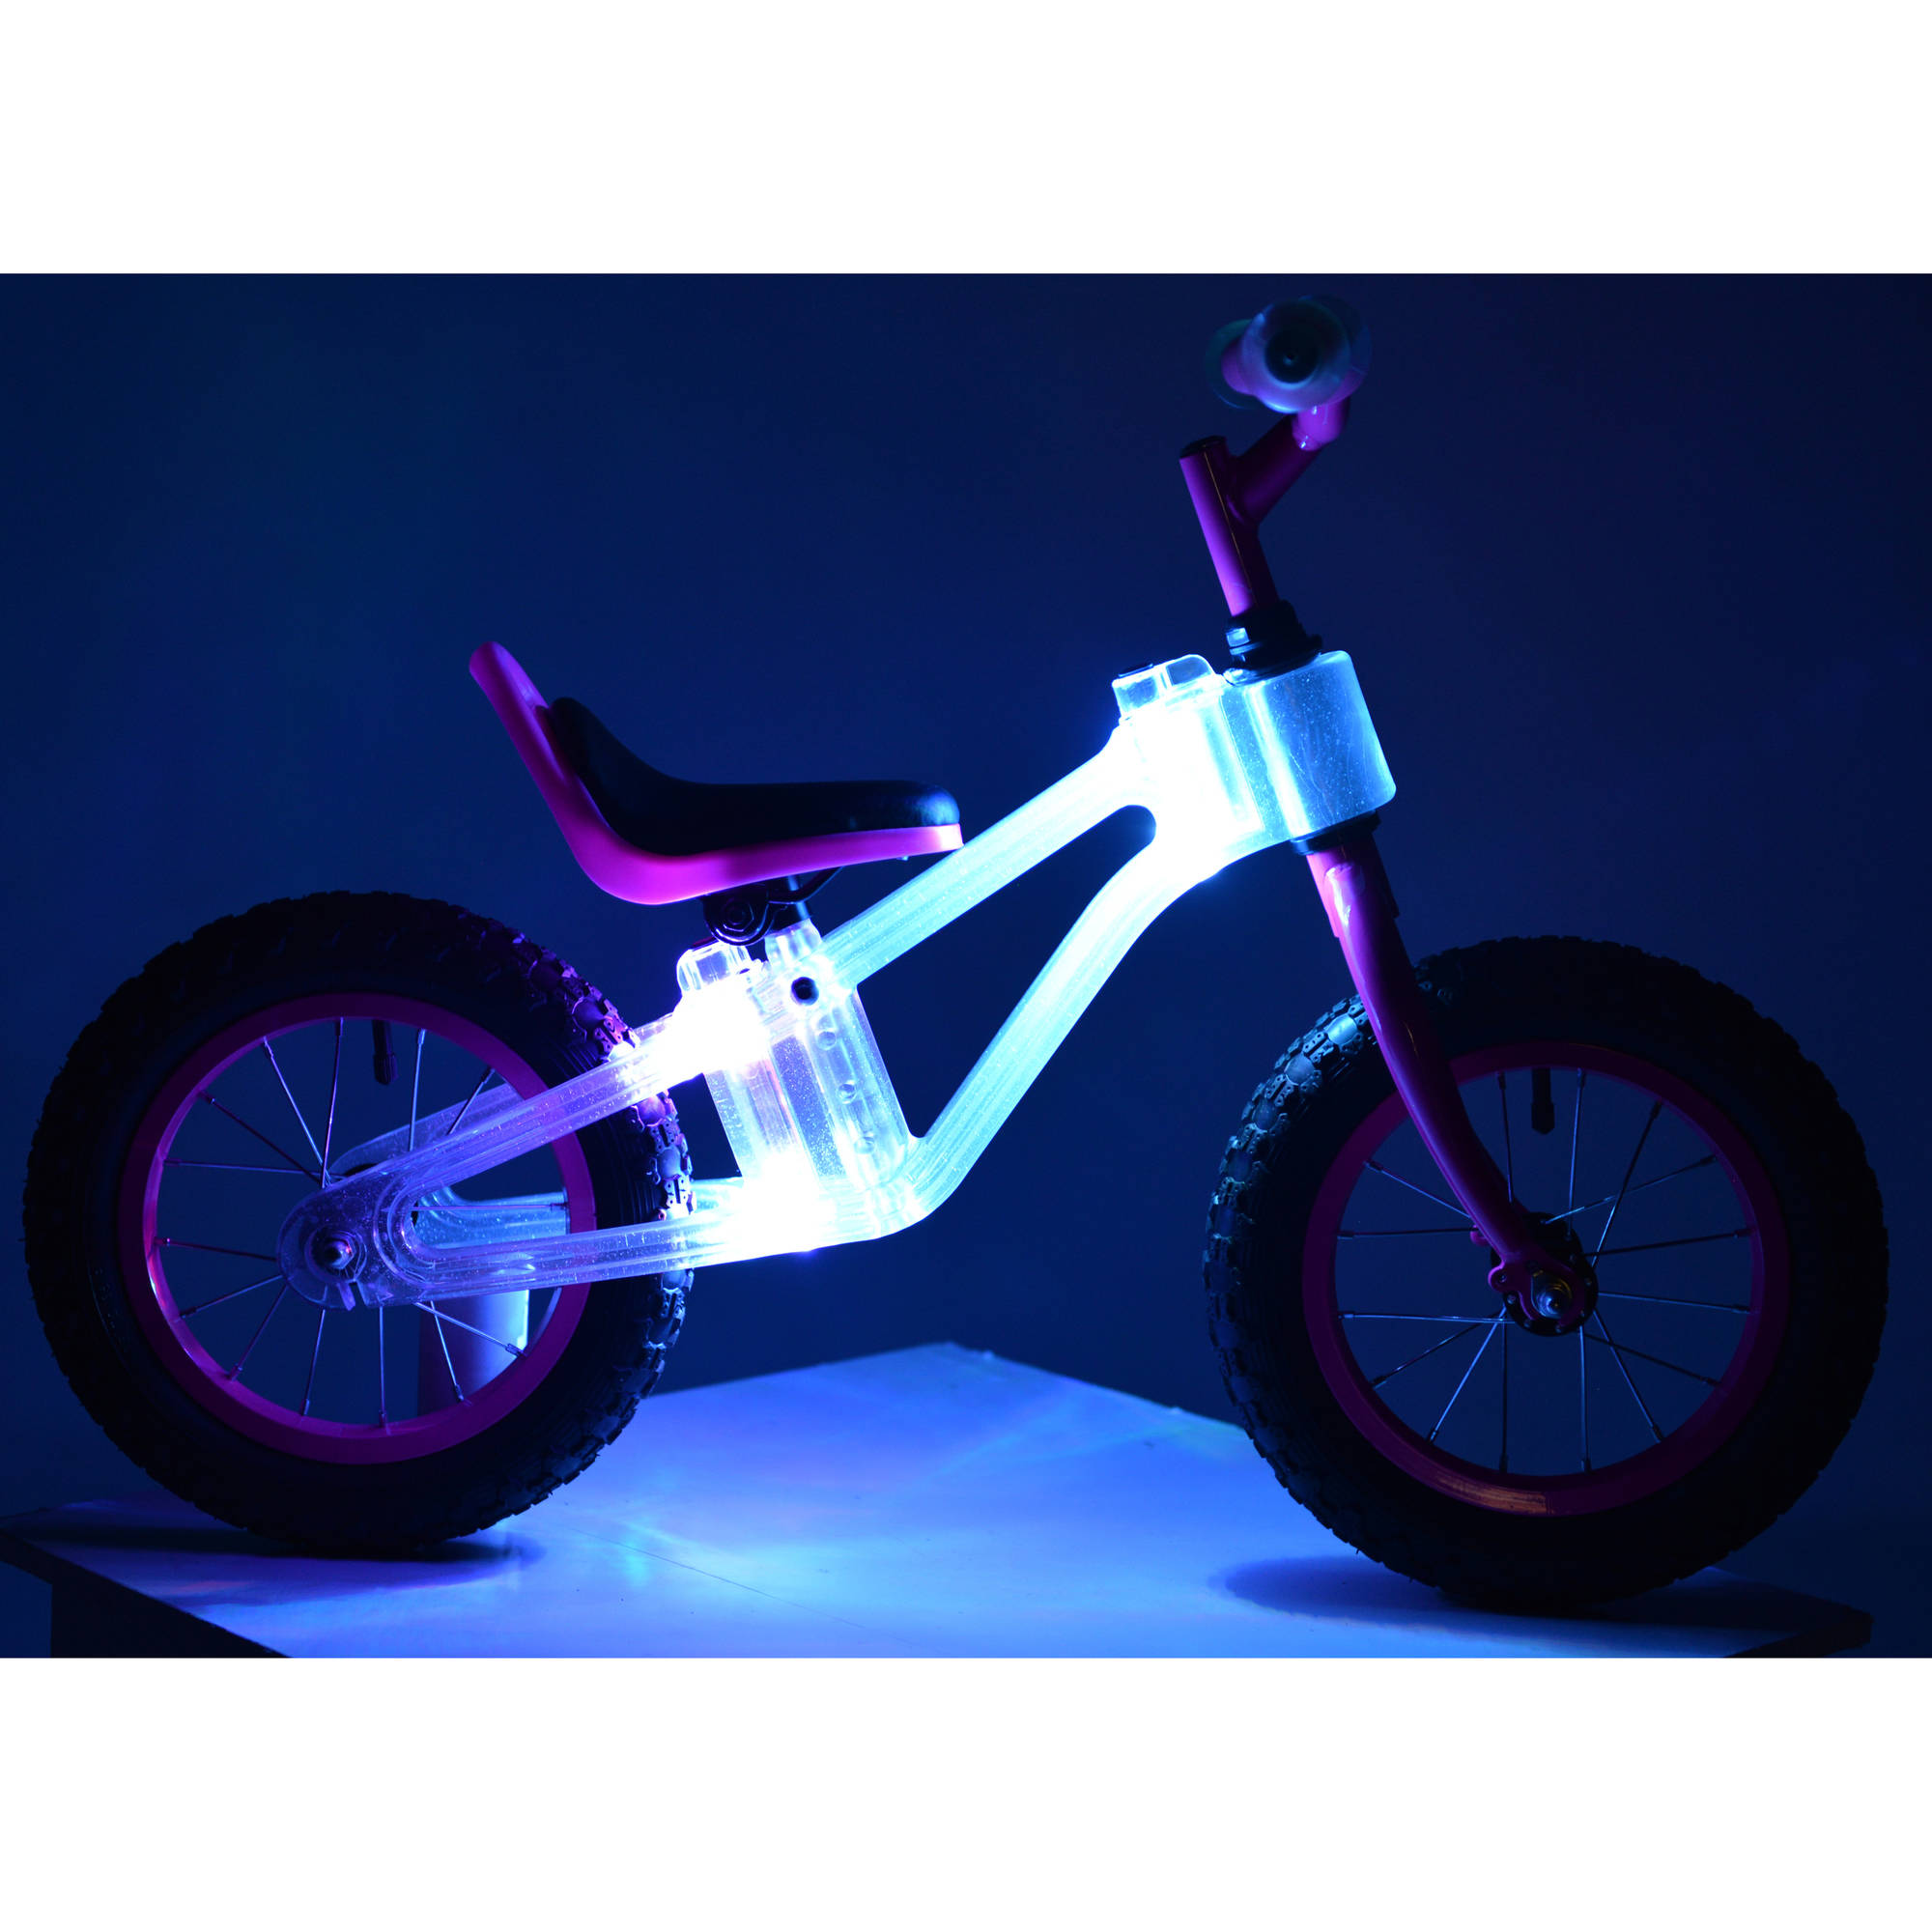 KaZAM 12" Blinki Balance Child's Bike with Multi-Colored LED Lights, Pink - image 2 of 6